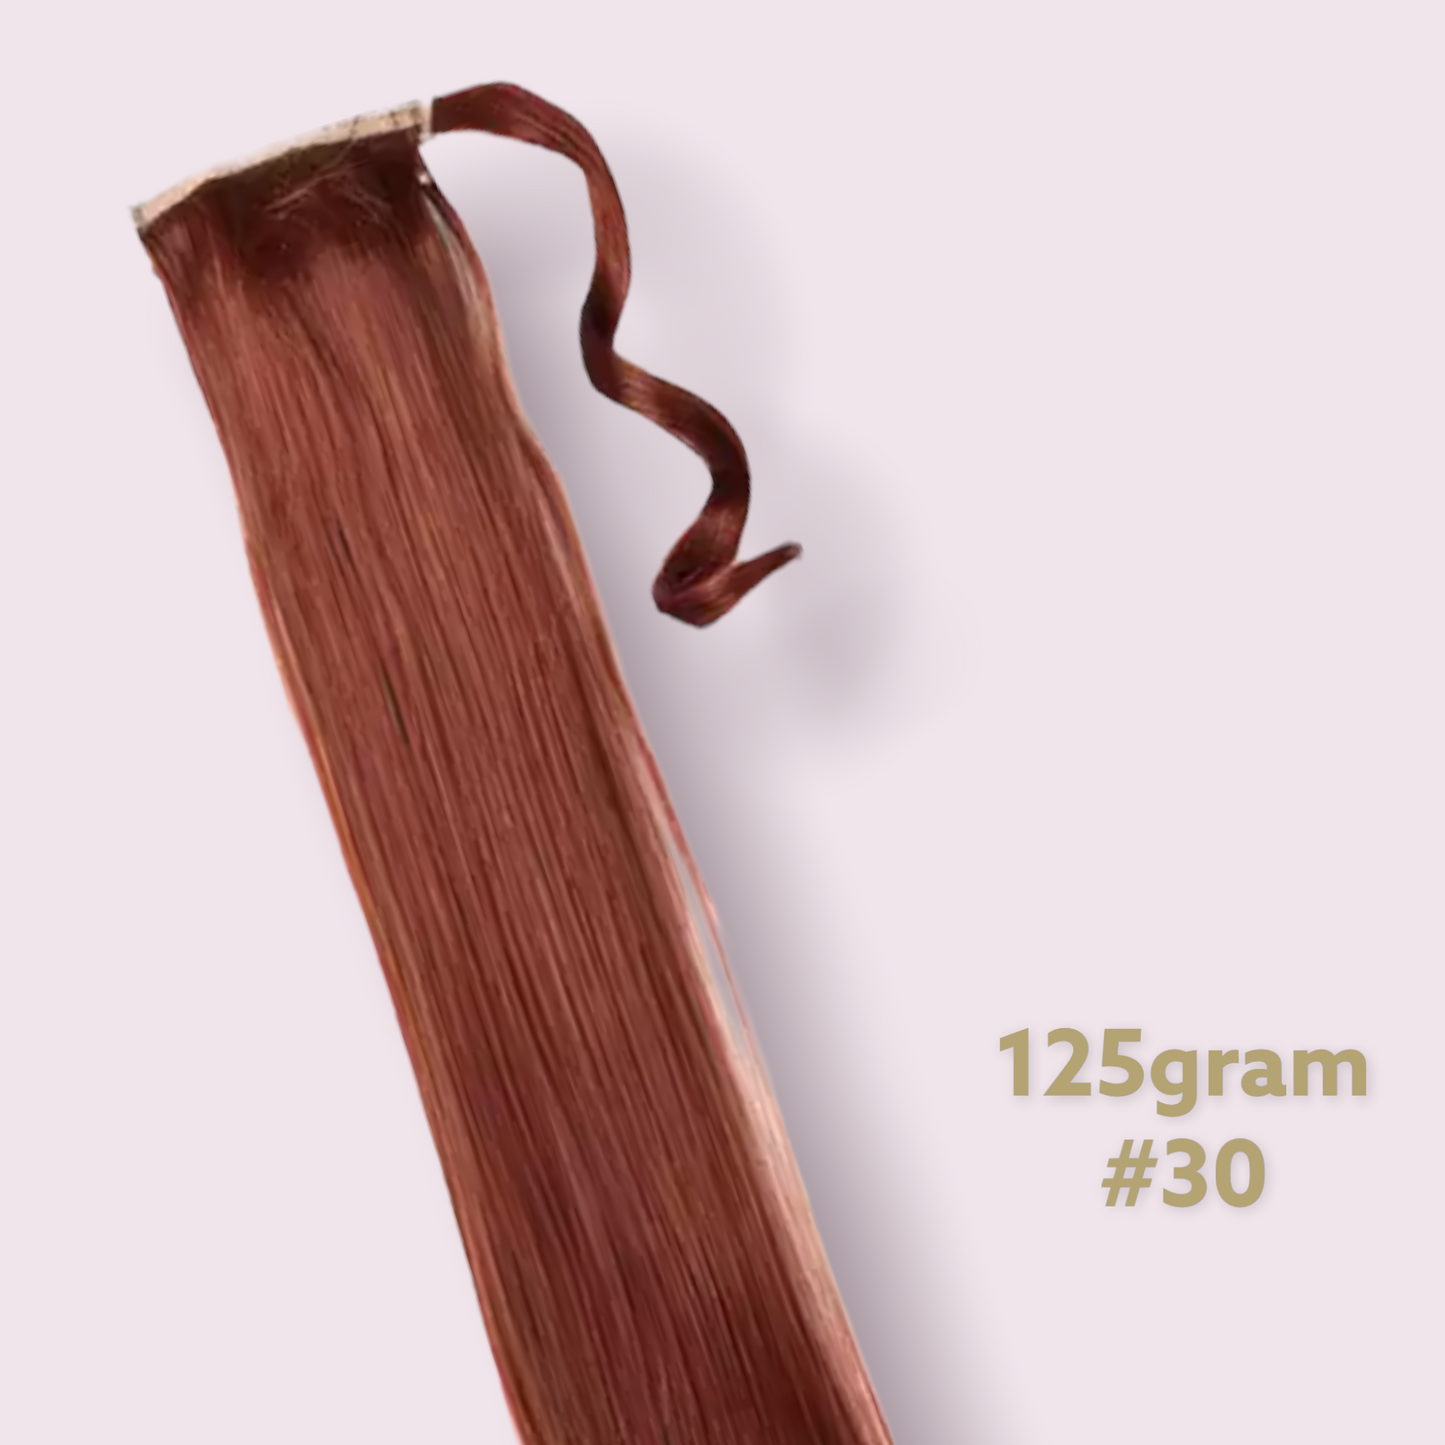 Salon Exclusive Wrap Ponytail 60cm 100%Monofibre hair